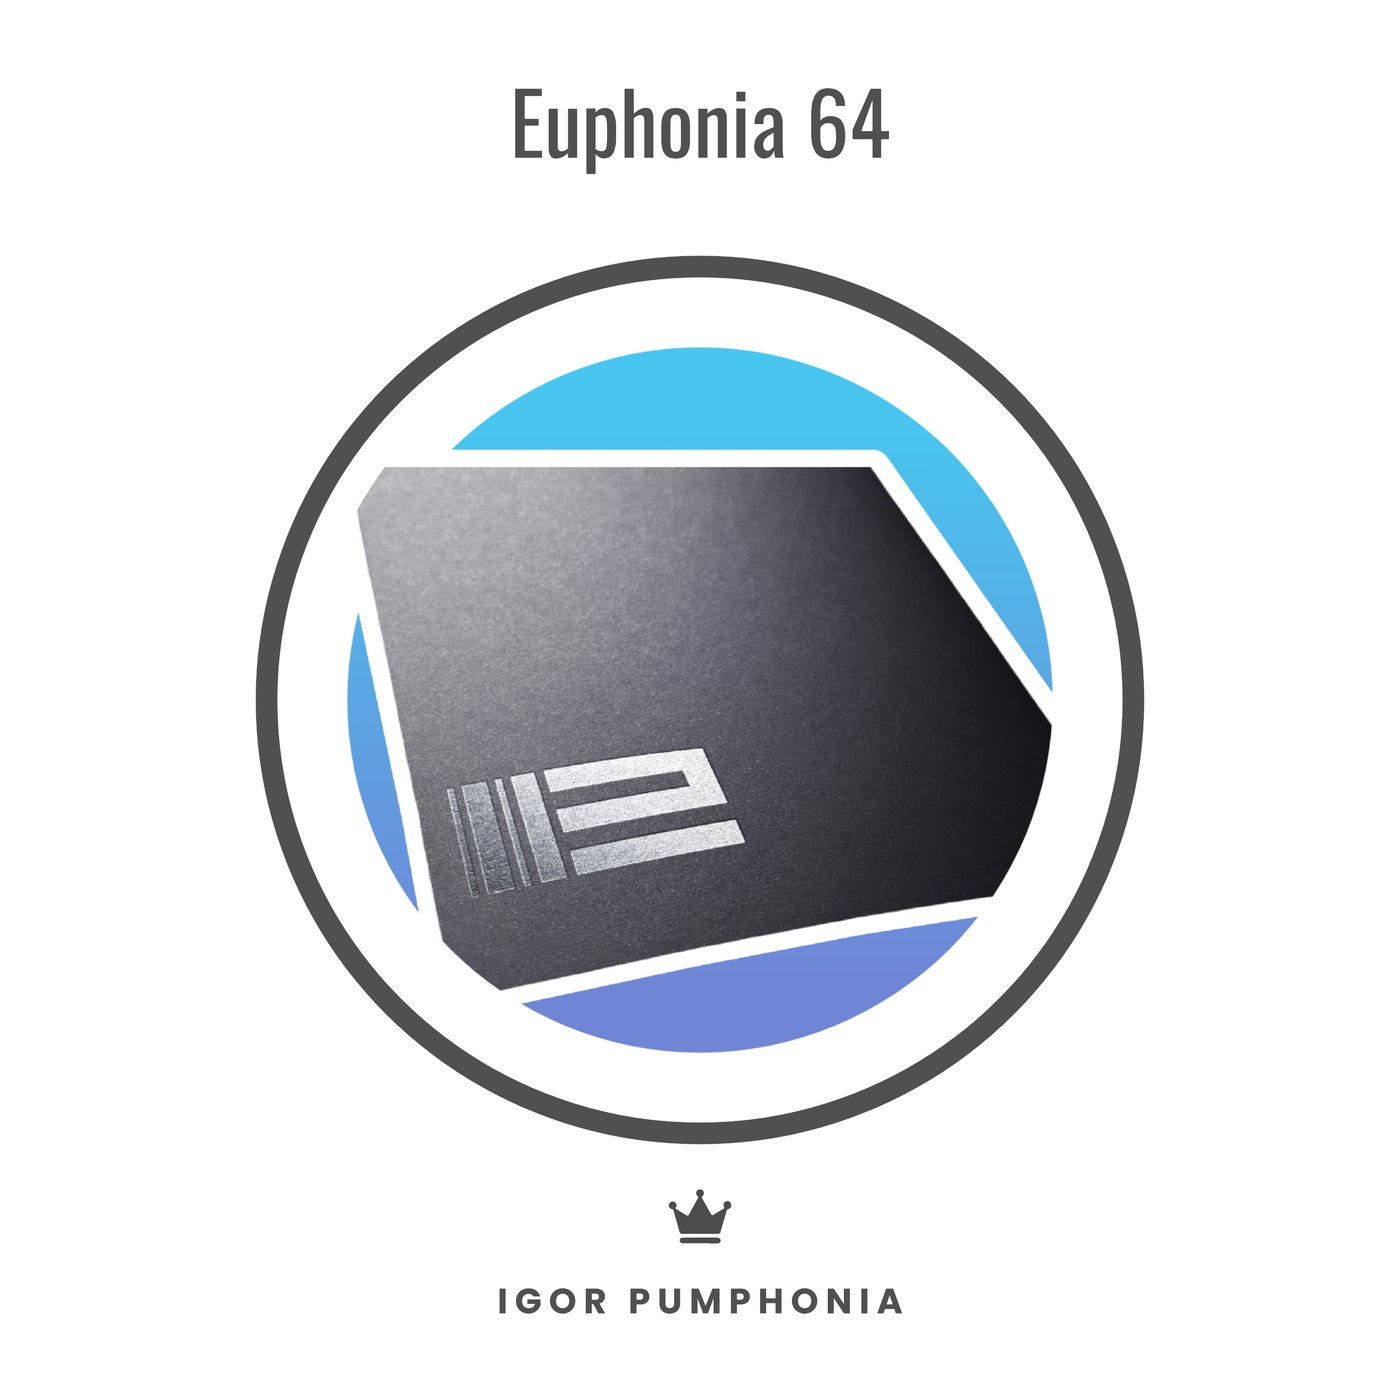 Euphonia 64